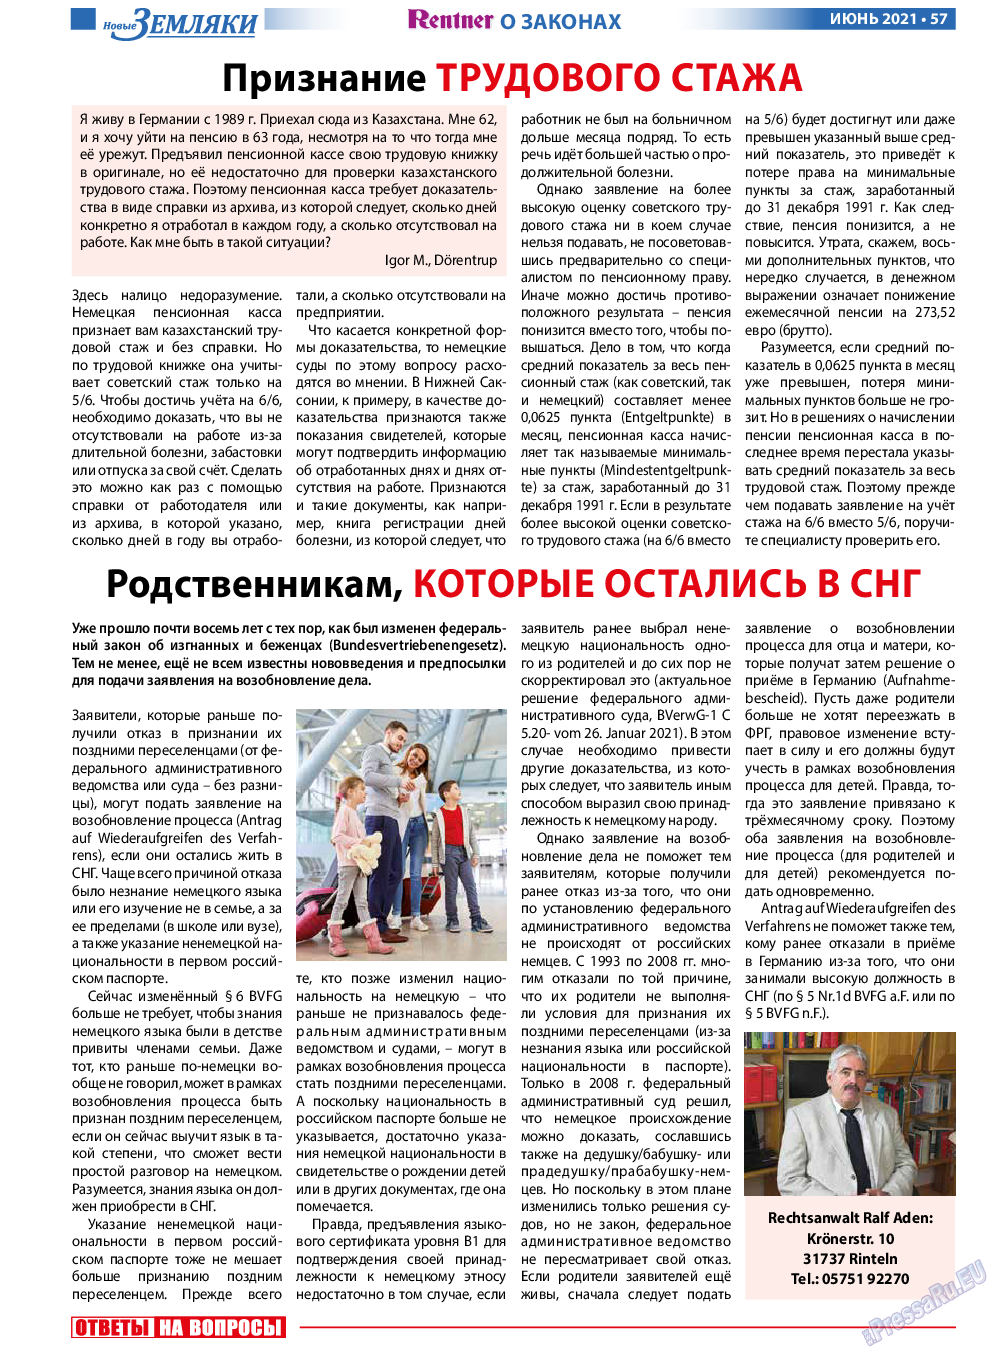 Новые Земляки, газета. 2021 №6 стр.57